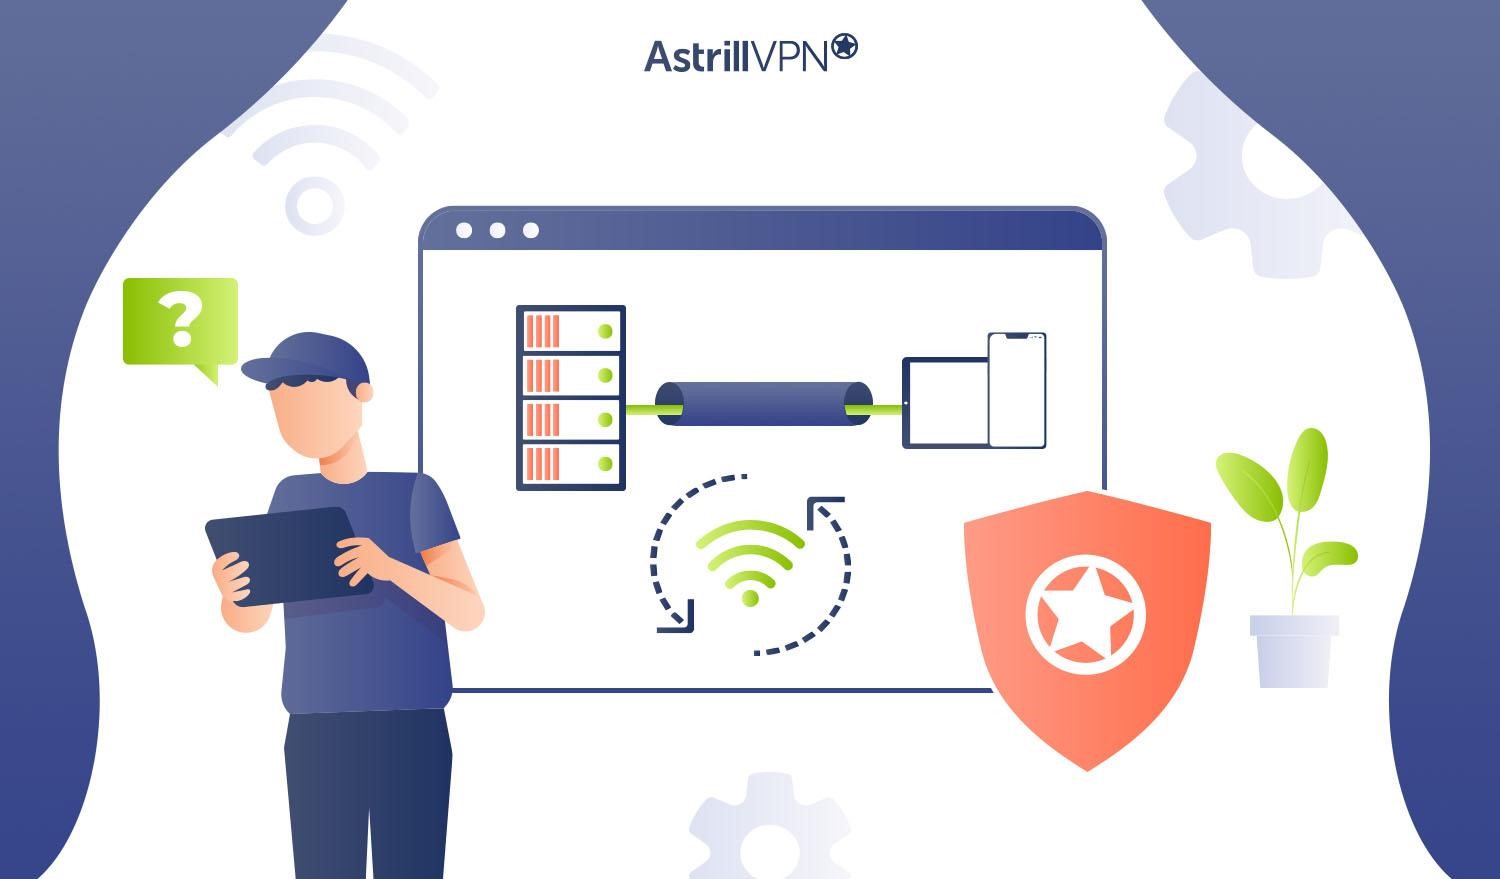 What VPN Tunnels Does AstrillVPN Offer